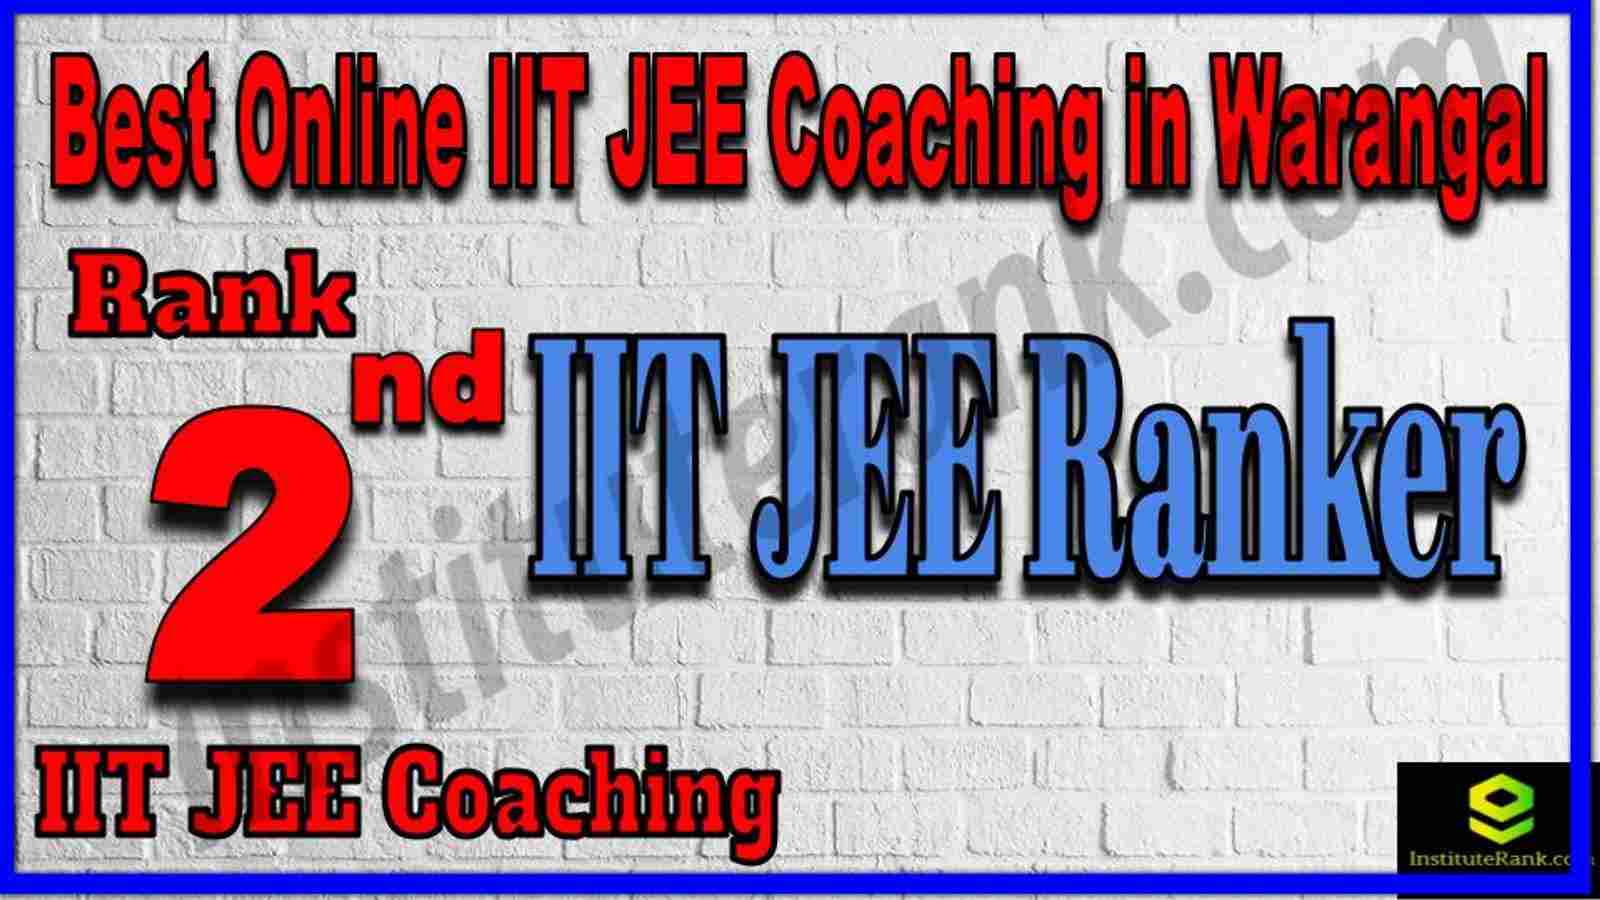 Rank 2nd Best Online IIT JEE Coaching in Warangal